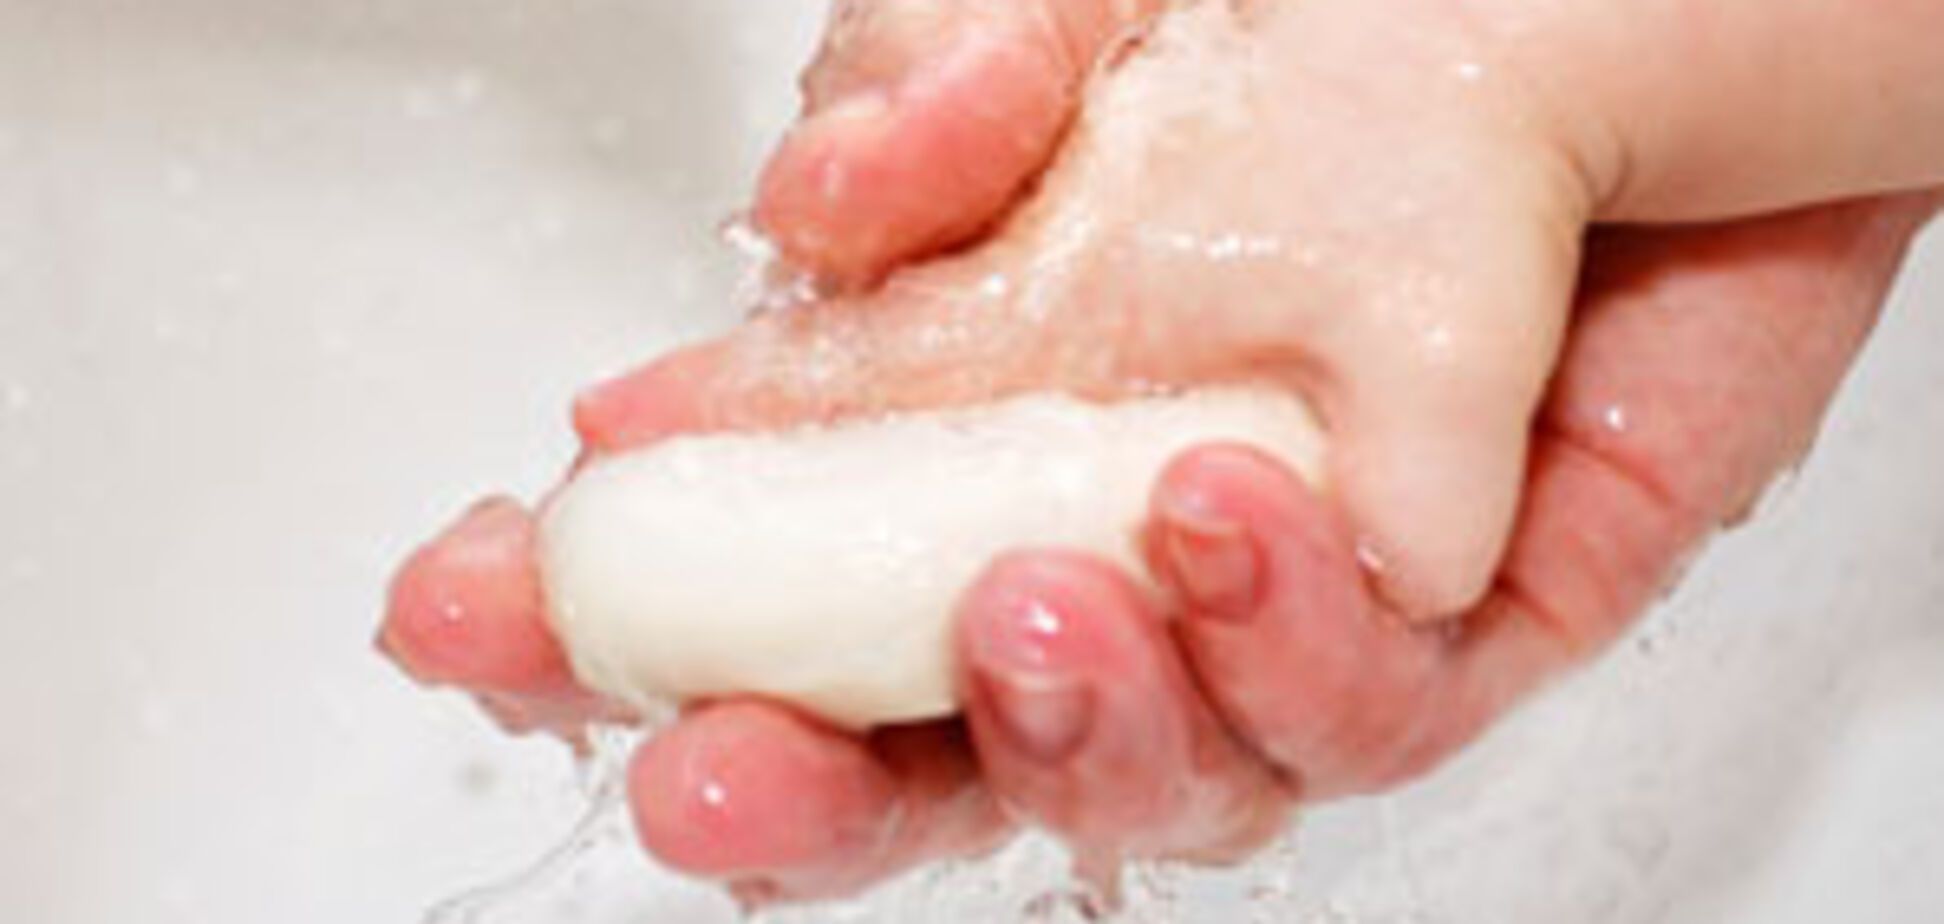 Чисті руки VS коронавірус: експертка пояснила, чому важлива гігієна. Відео